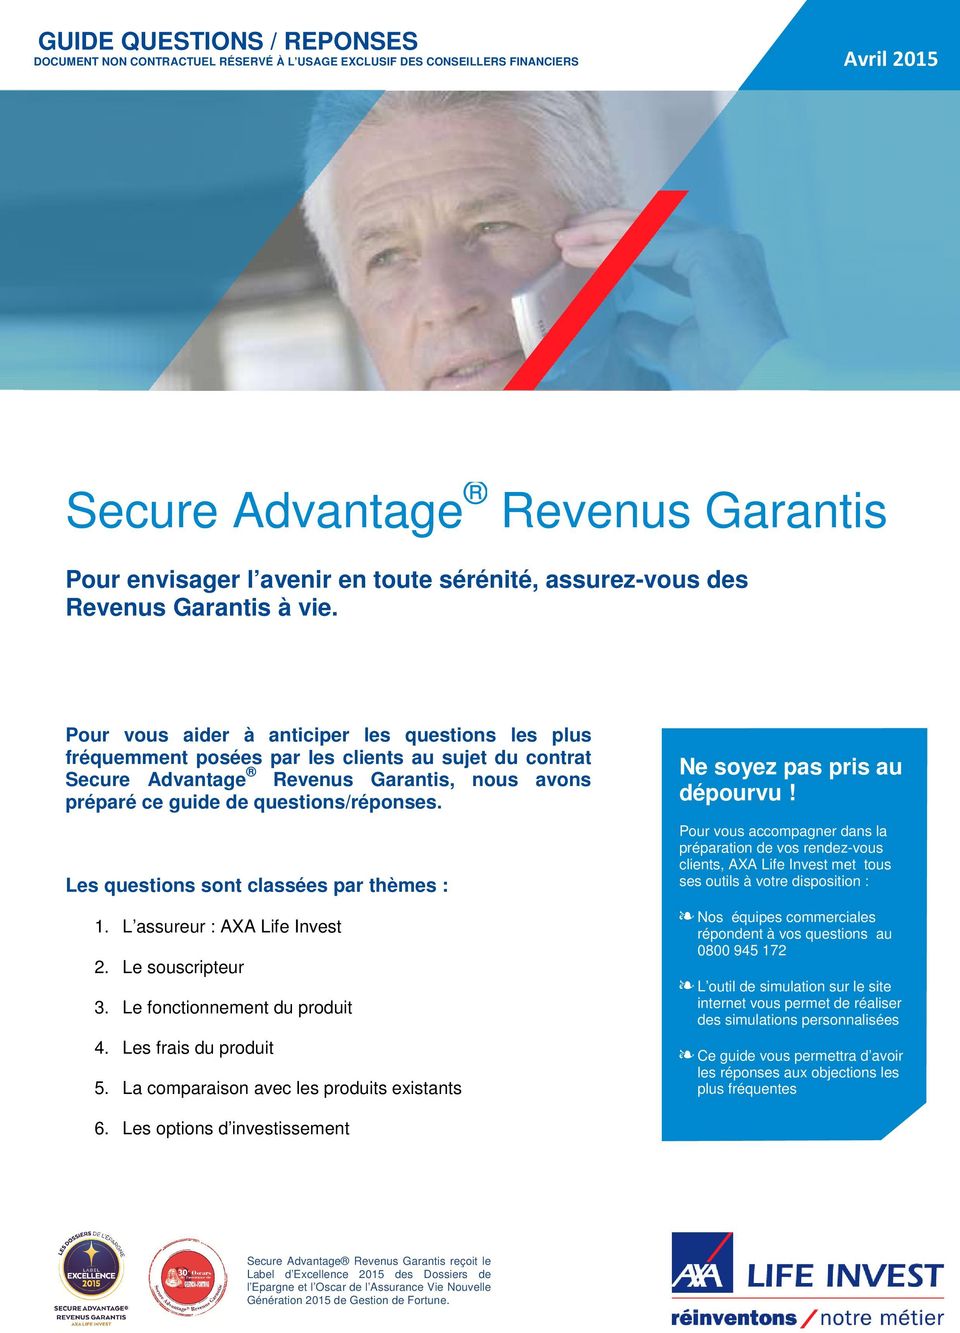 Pour vous aider à anticiper les questions les plus fréquemment posées par les clients au sujet du contrat Secure Advantage Revenus Garantis, nous avons préparé ce guide de questions/réponses.